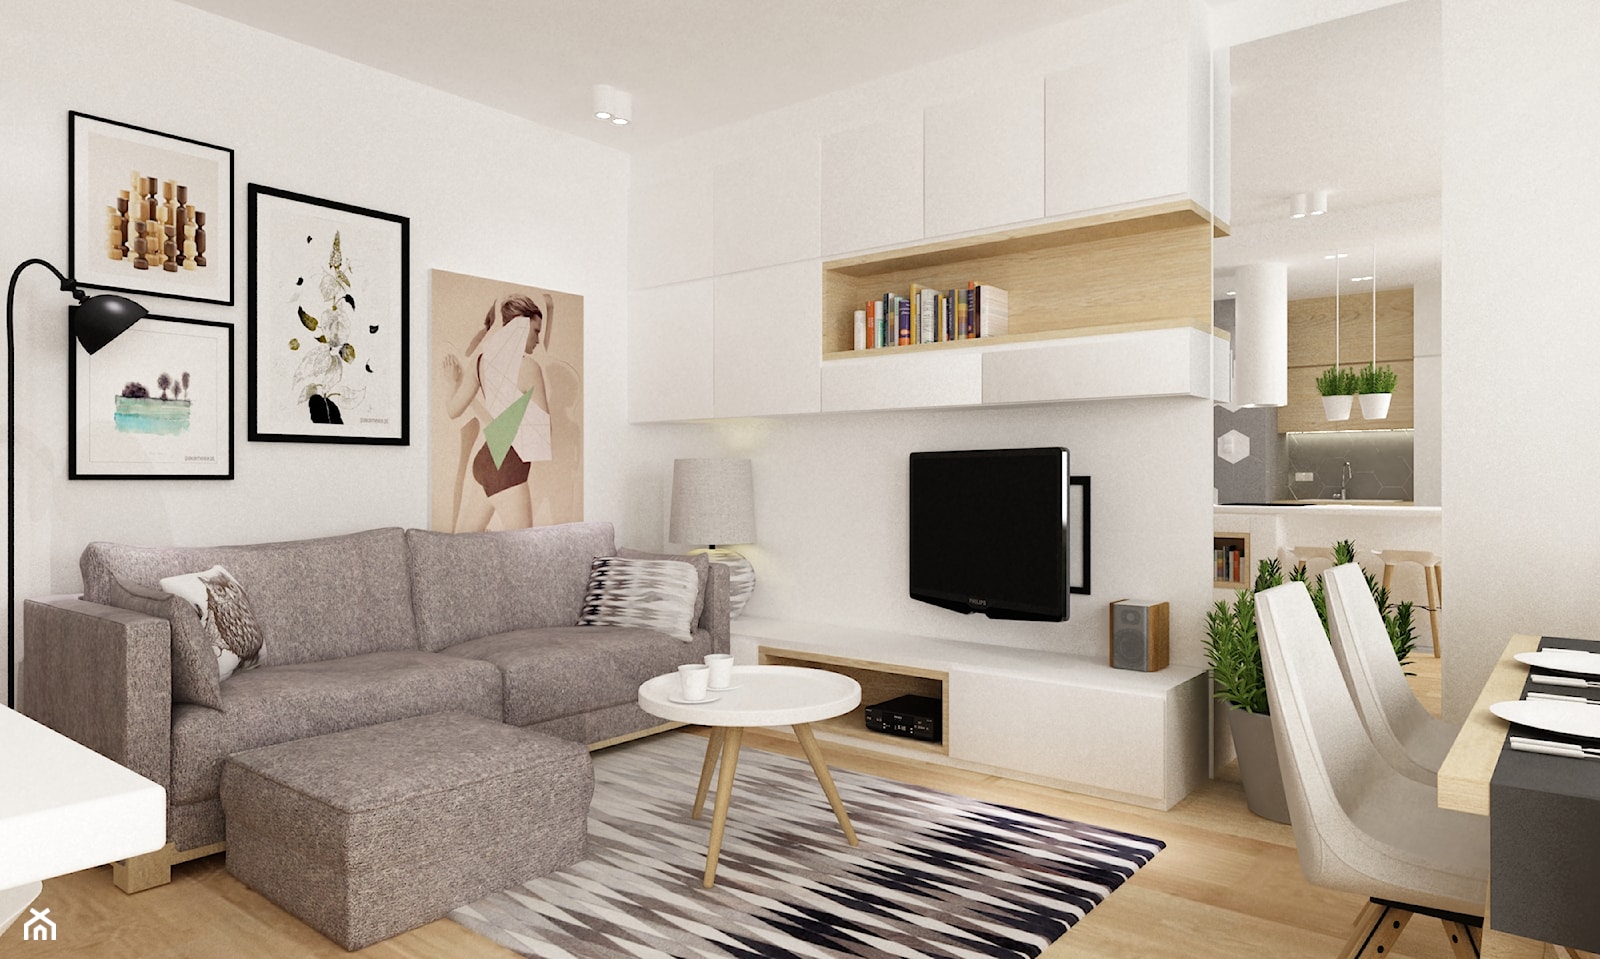 mieszkanie na ochocie 50m2 kolor biel,szarość,dąb - Mały biały salon z jadalnią, styl skandynawski - zdjęcie od Grafika i Projekt architektura wnętrz - Homebook